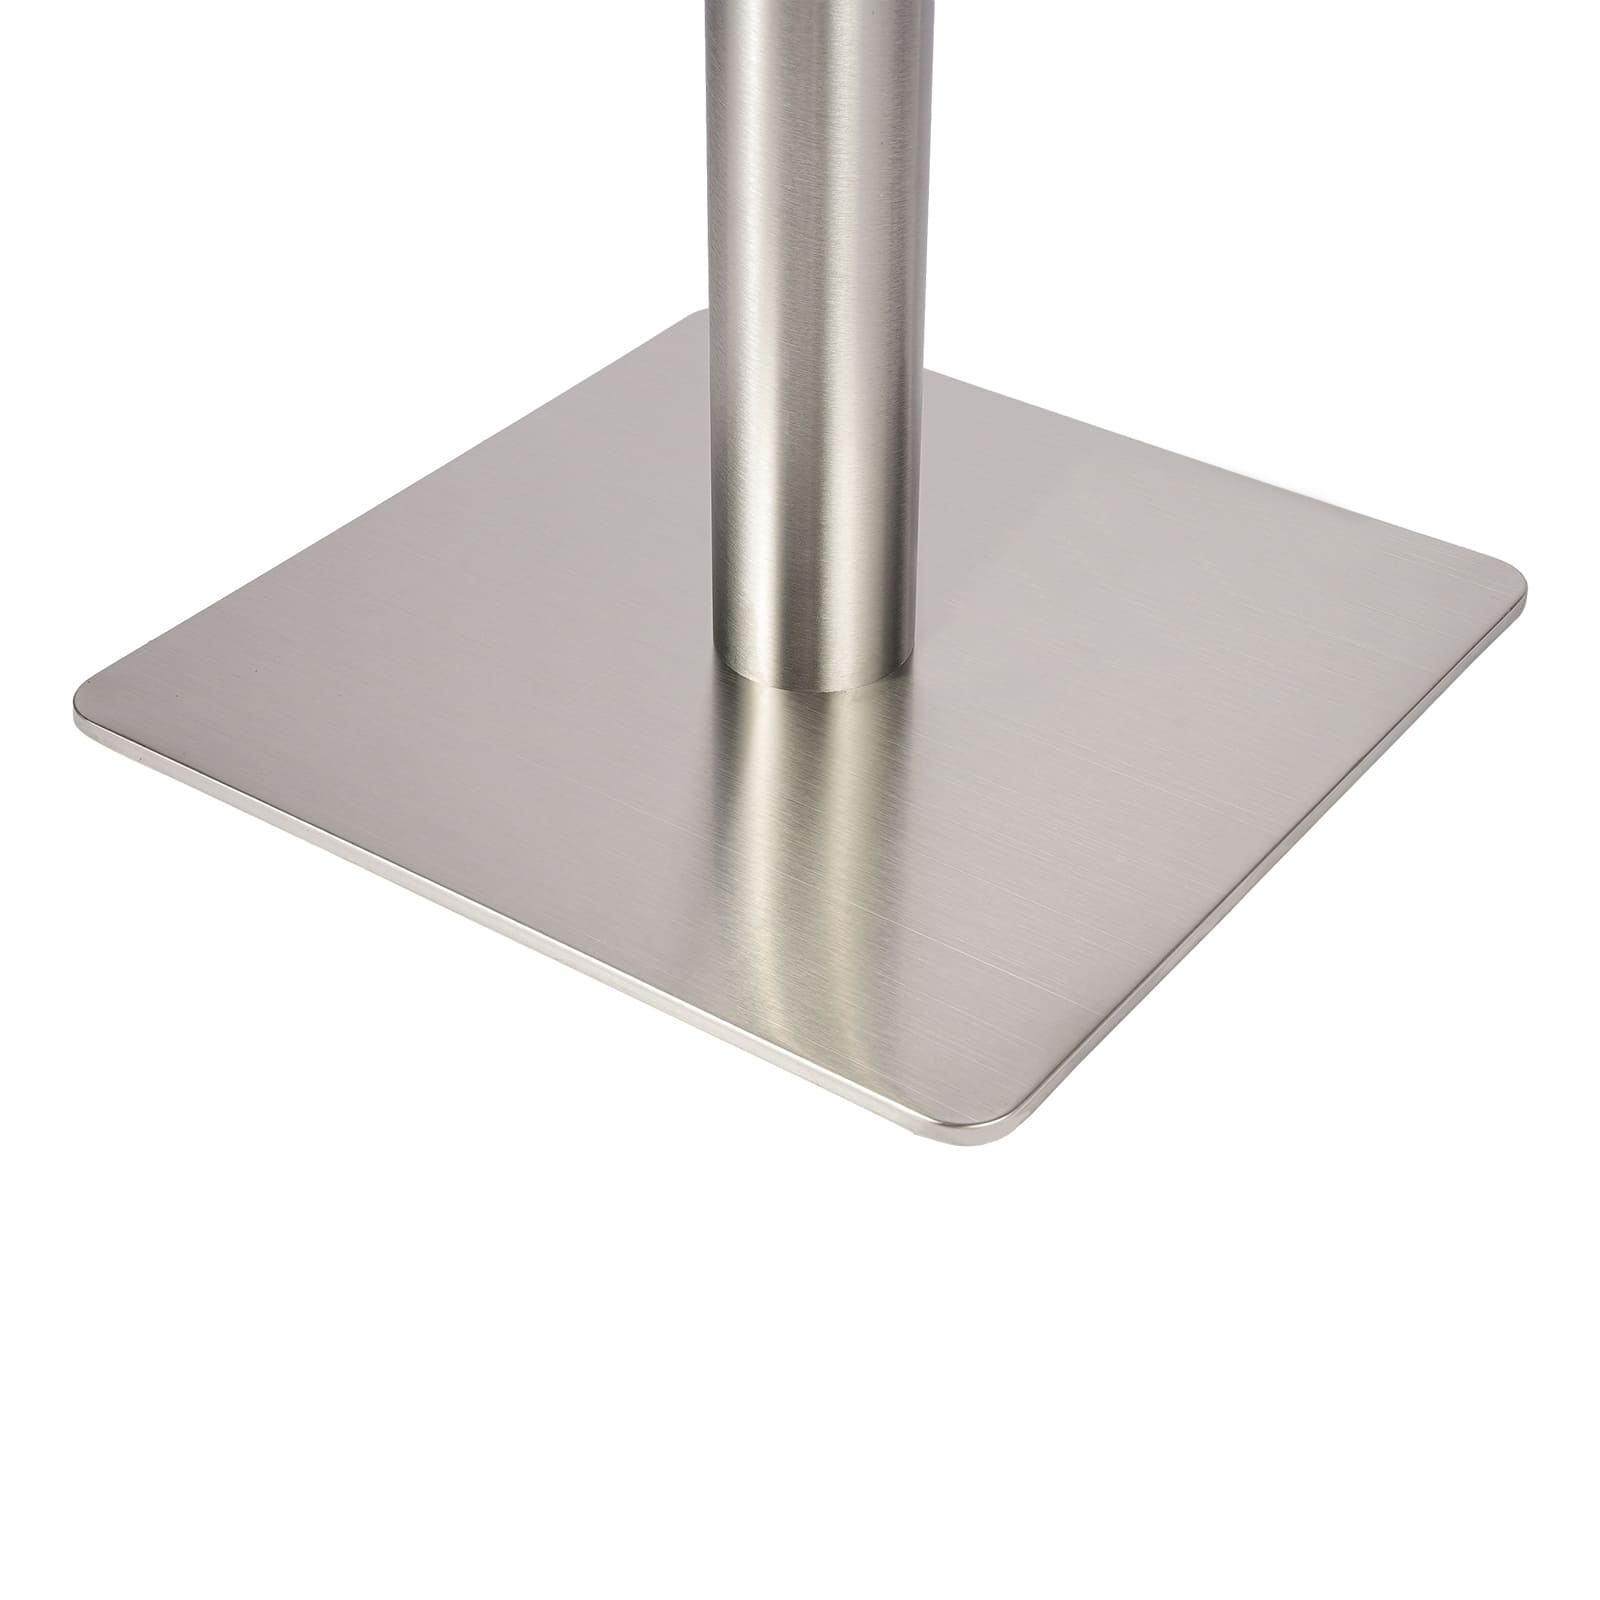 Pieds de table carrés en acier inoxydable 72 cm